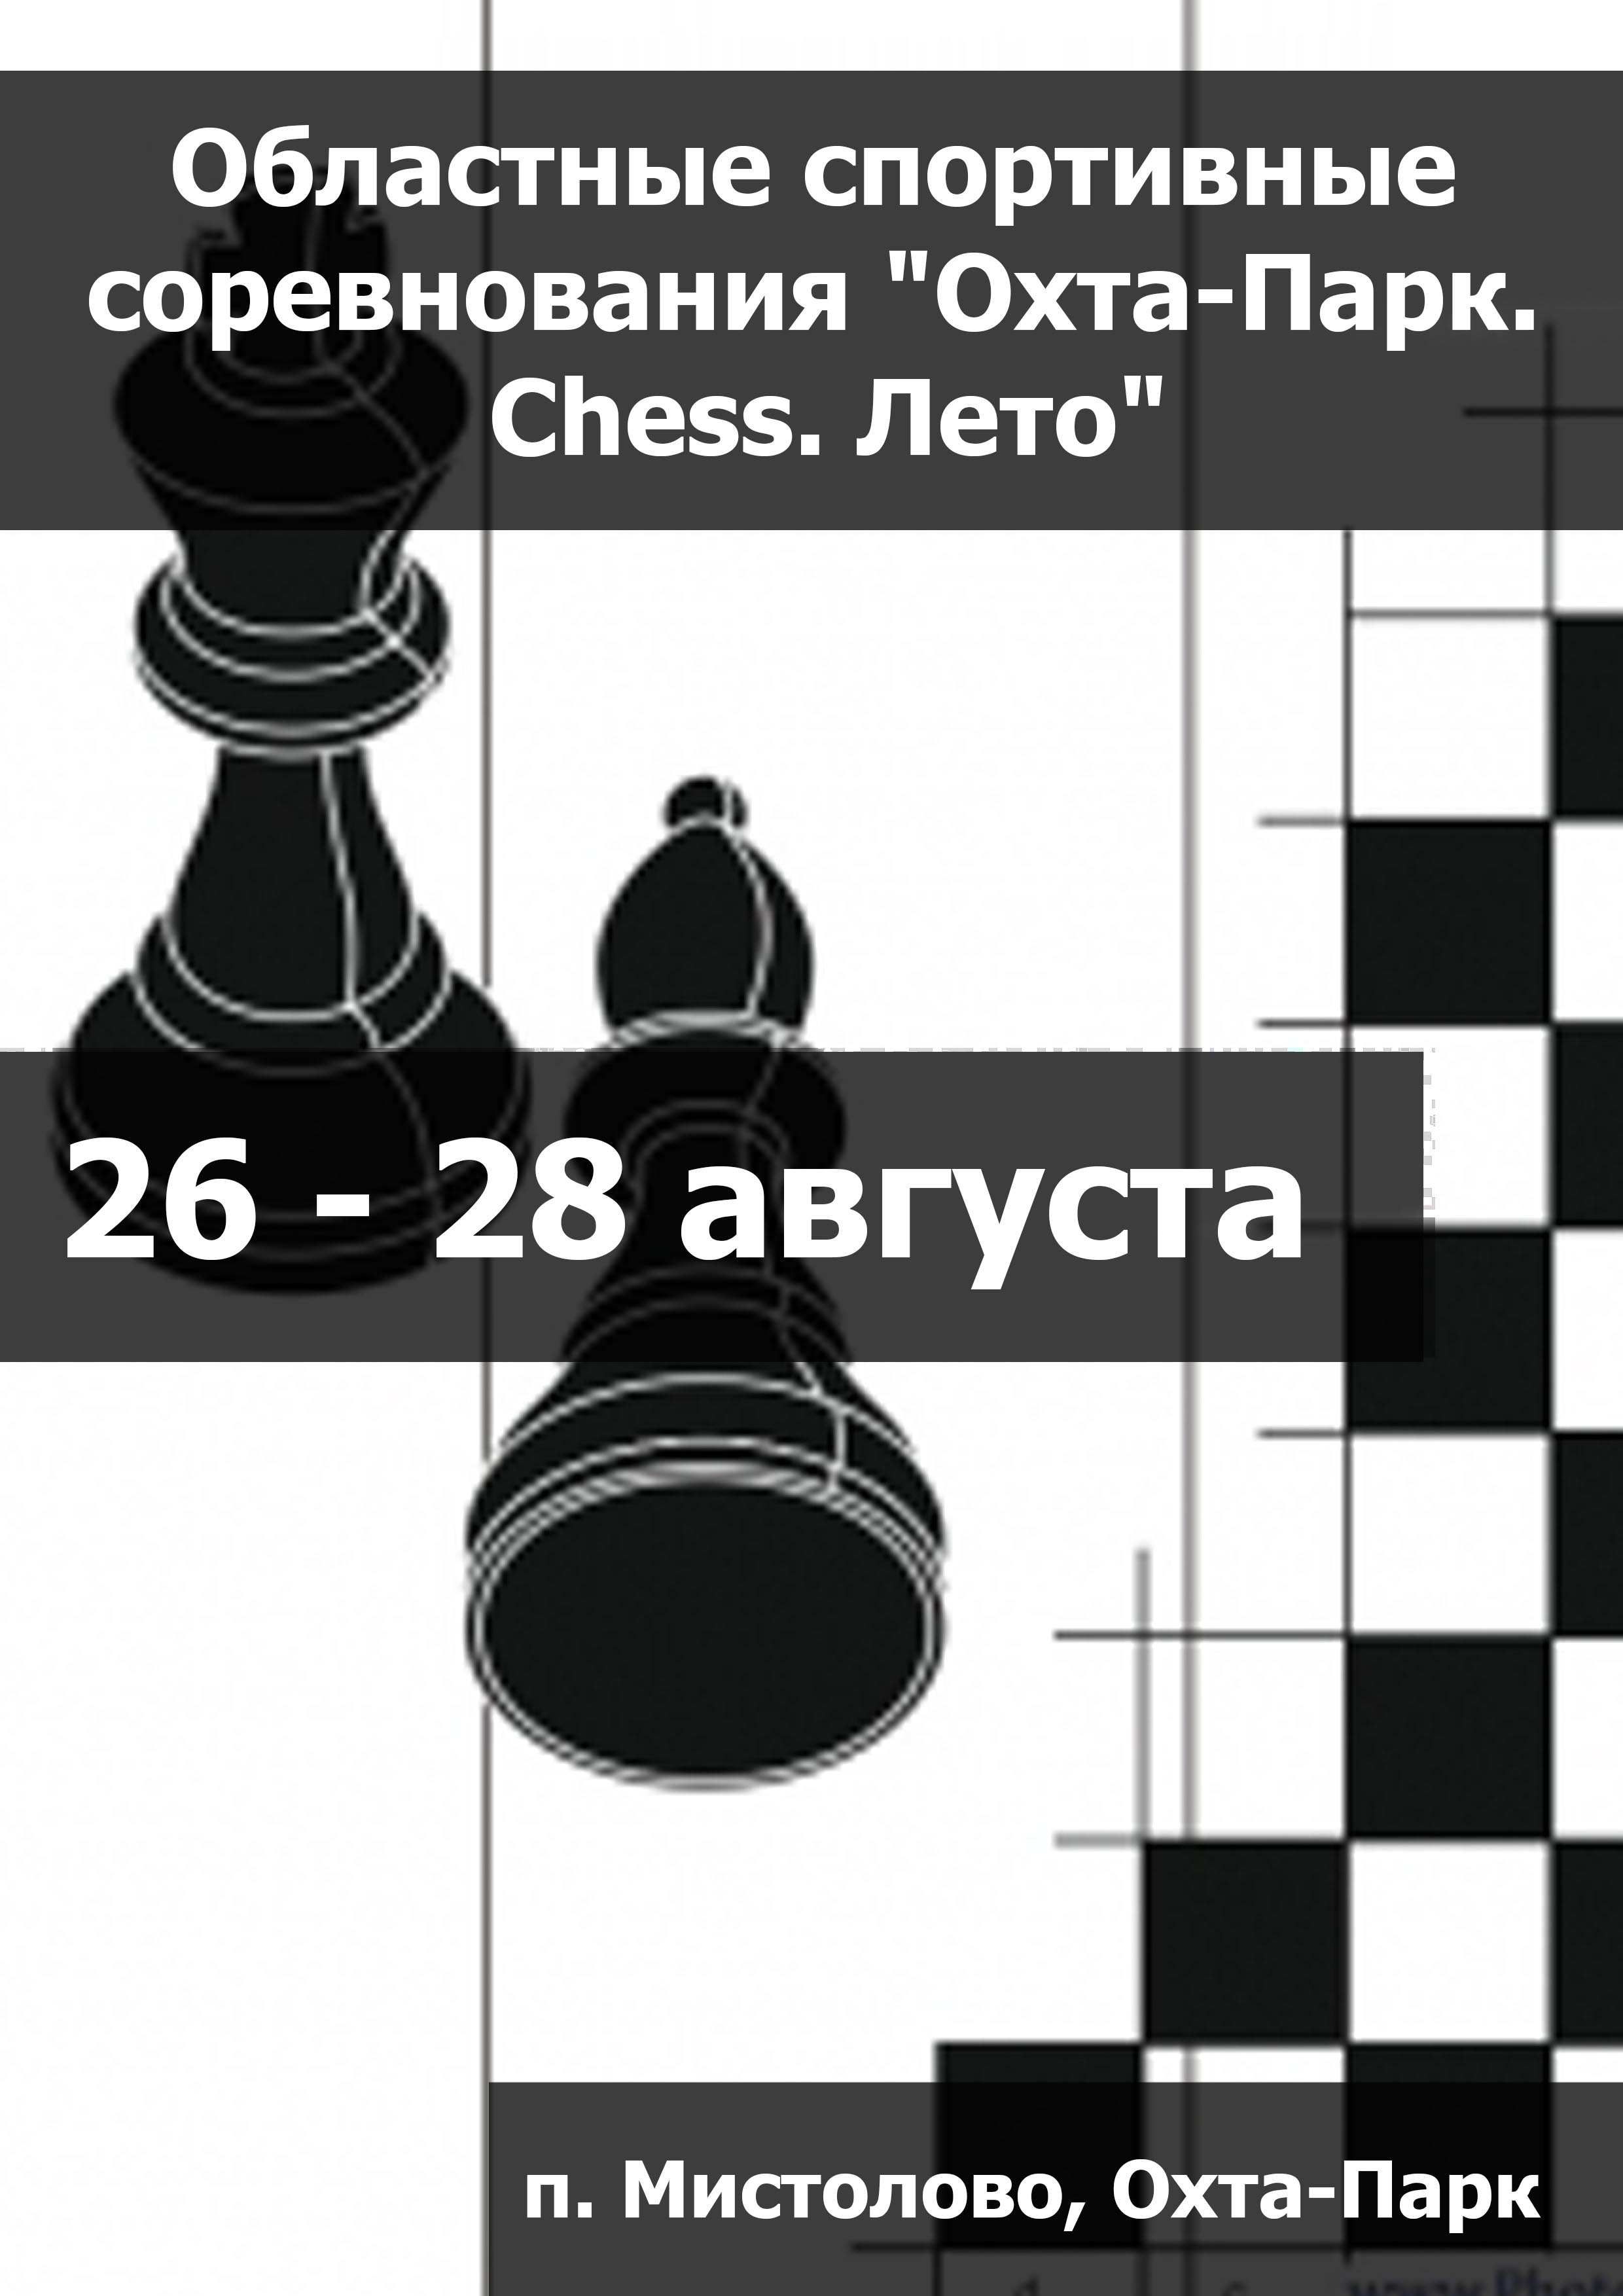 Областные спортивные соревнования "Охта-Парк. Chess. Лето" 26  - августундагы
 2023  - жыл
 